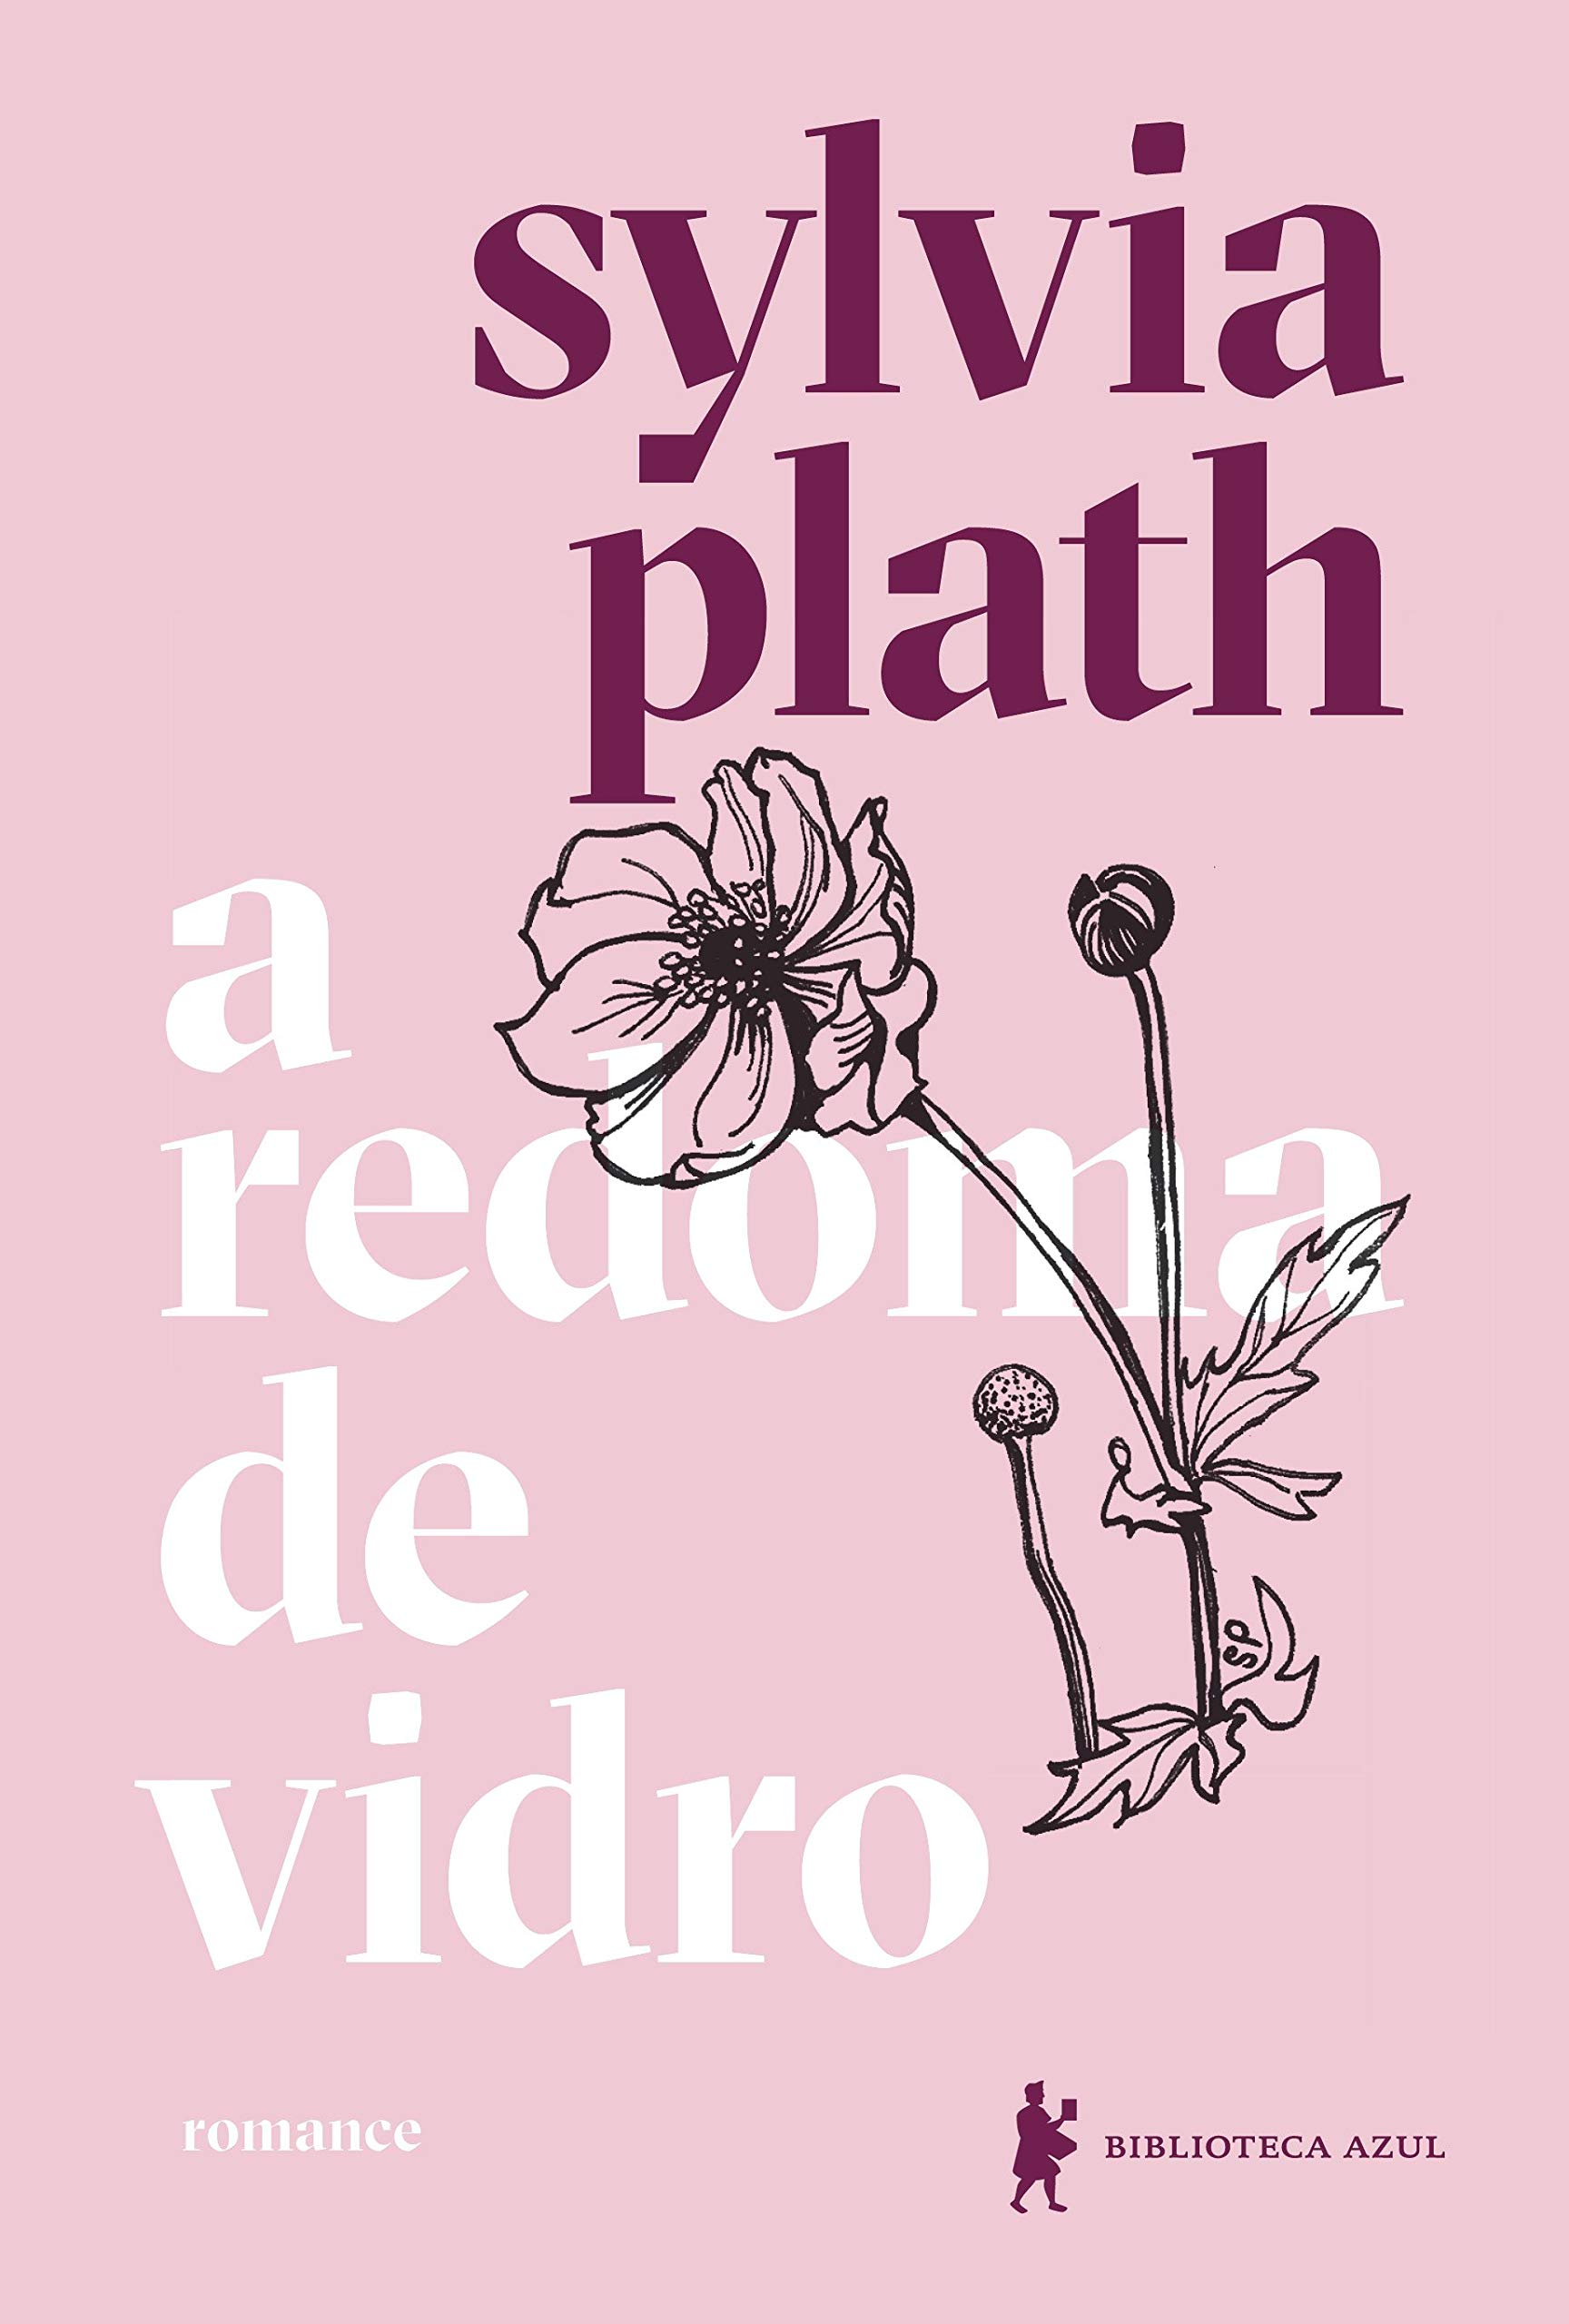 Livro "A Redoma de Vidro", de Sylvia Plath, é uma ficção semi-biográfica em que a autora utilizou uma personagem para contar a história real de sua vida(Foto: Divulgação/Biblioteca Azul)